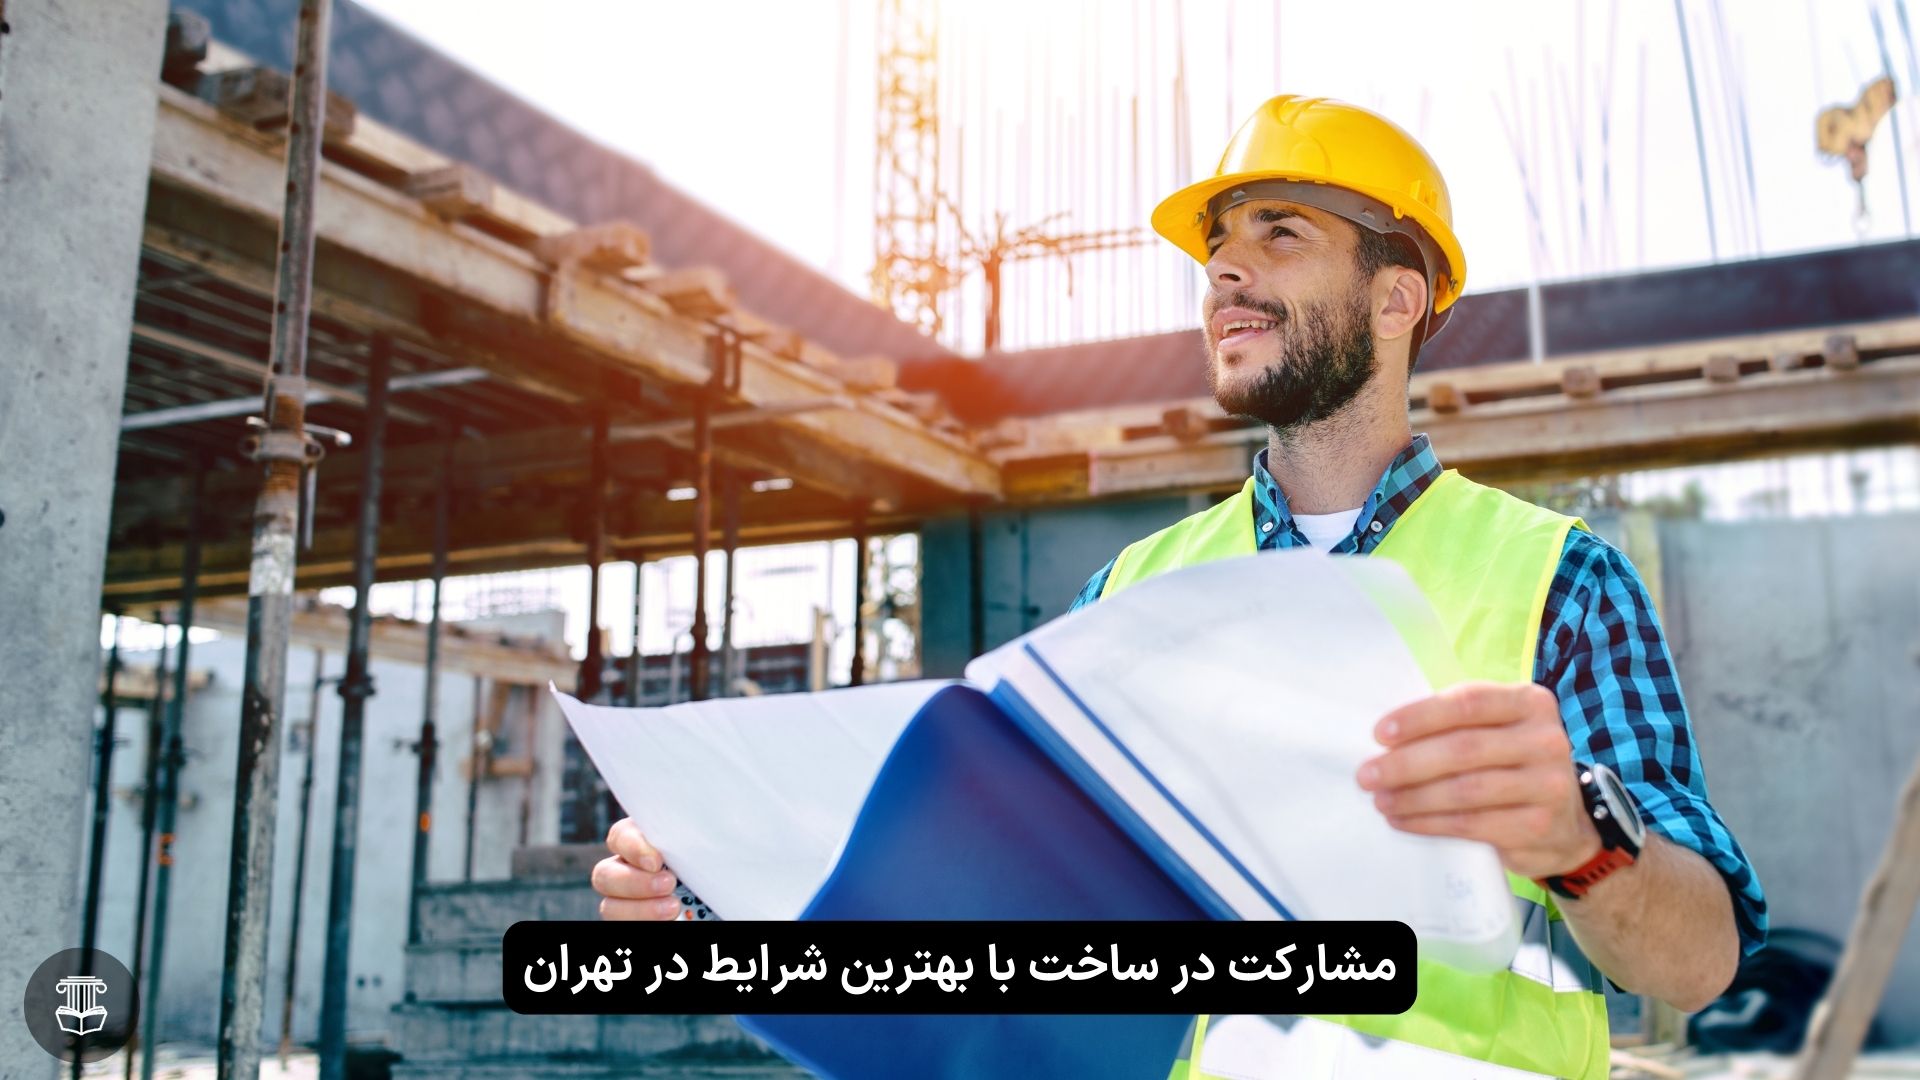 مشارکت در ساخت تهران با بهترین شرایط